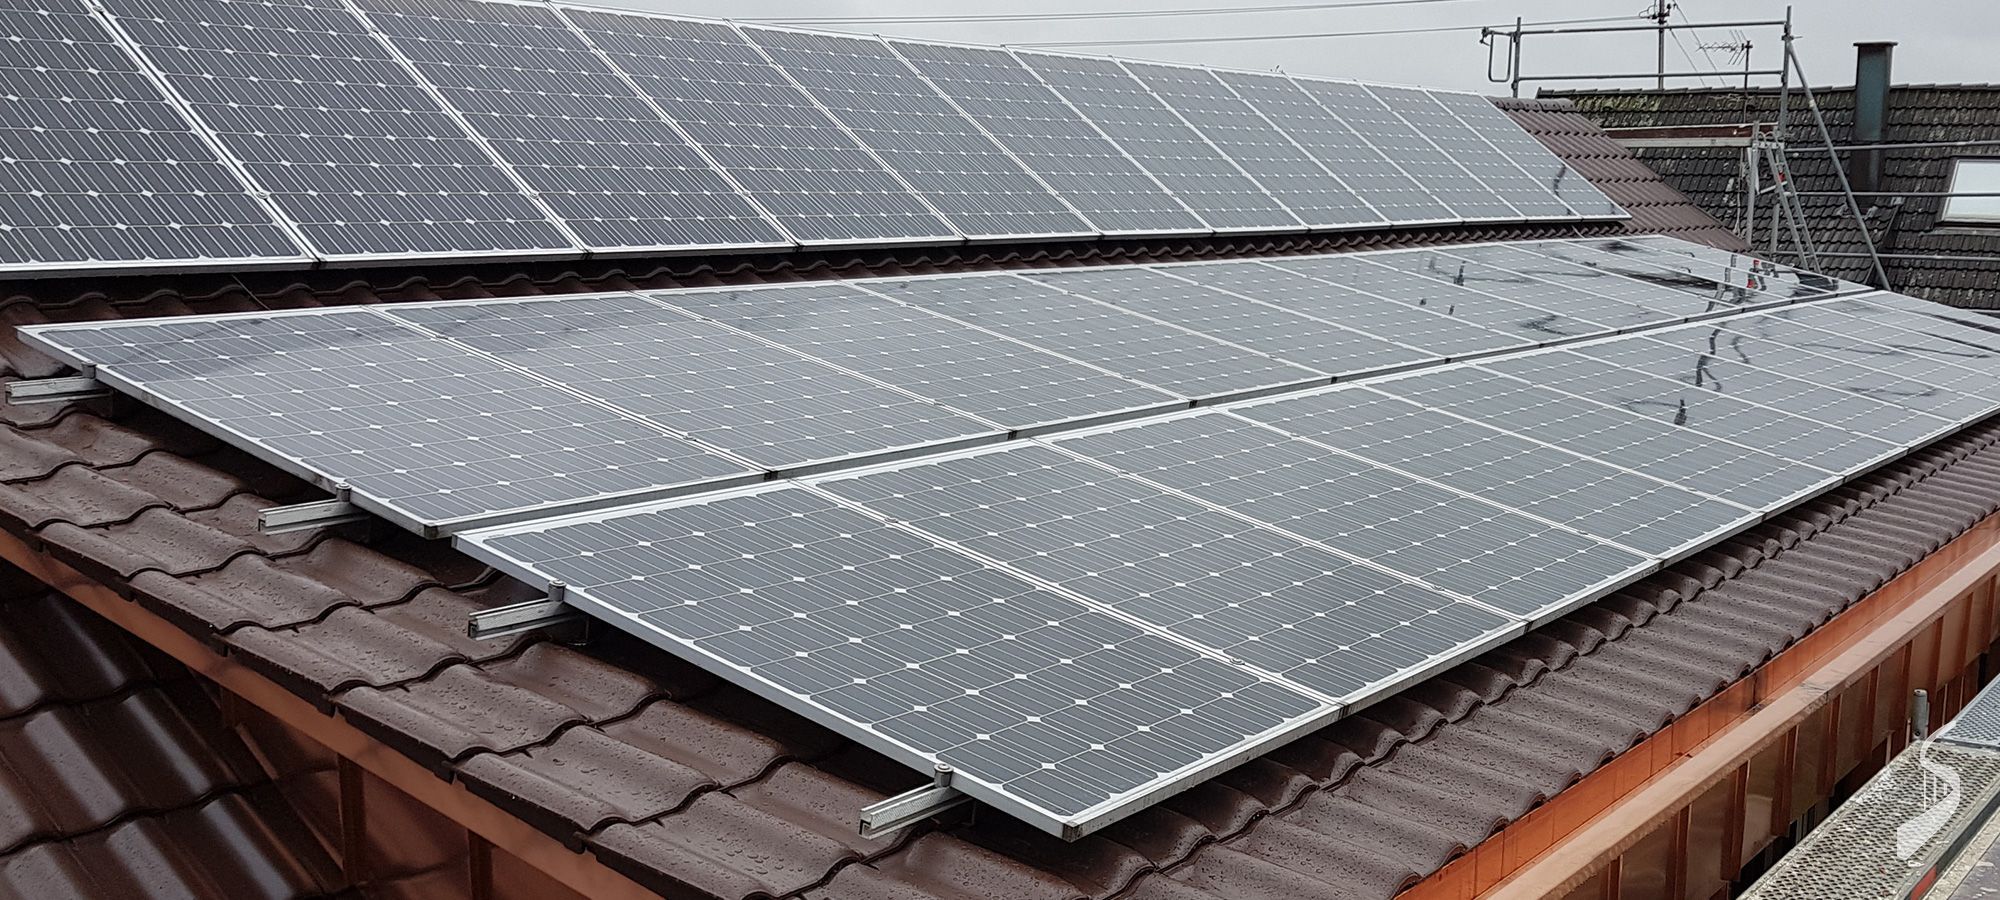 Dach mit Solarpaneelen